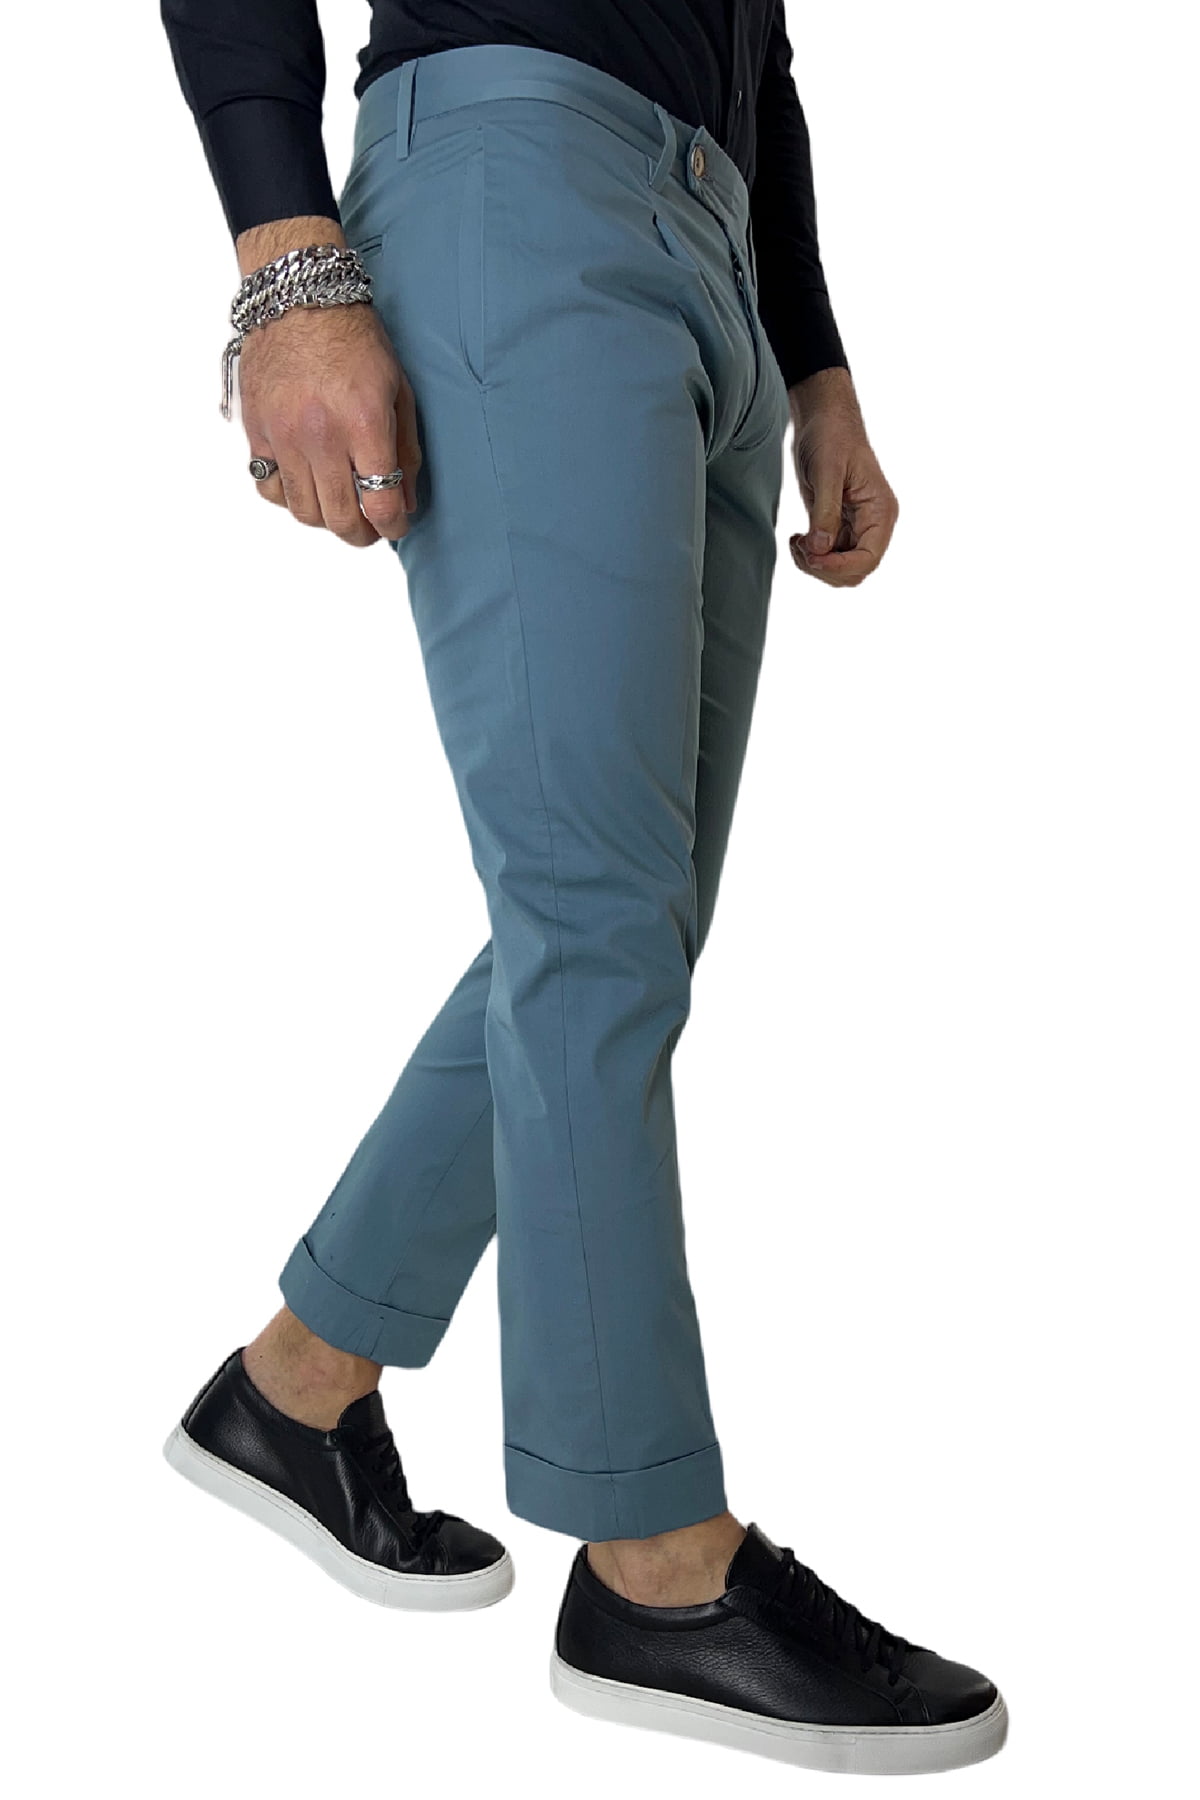 Pantalone uomo Celeste in cotone tasca america con pence made in italy